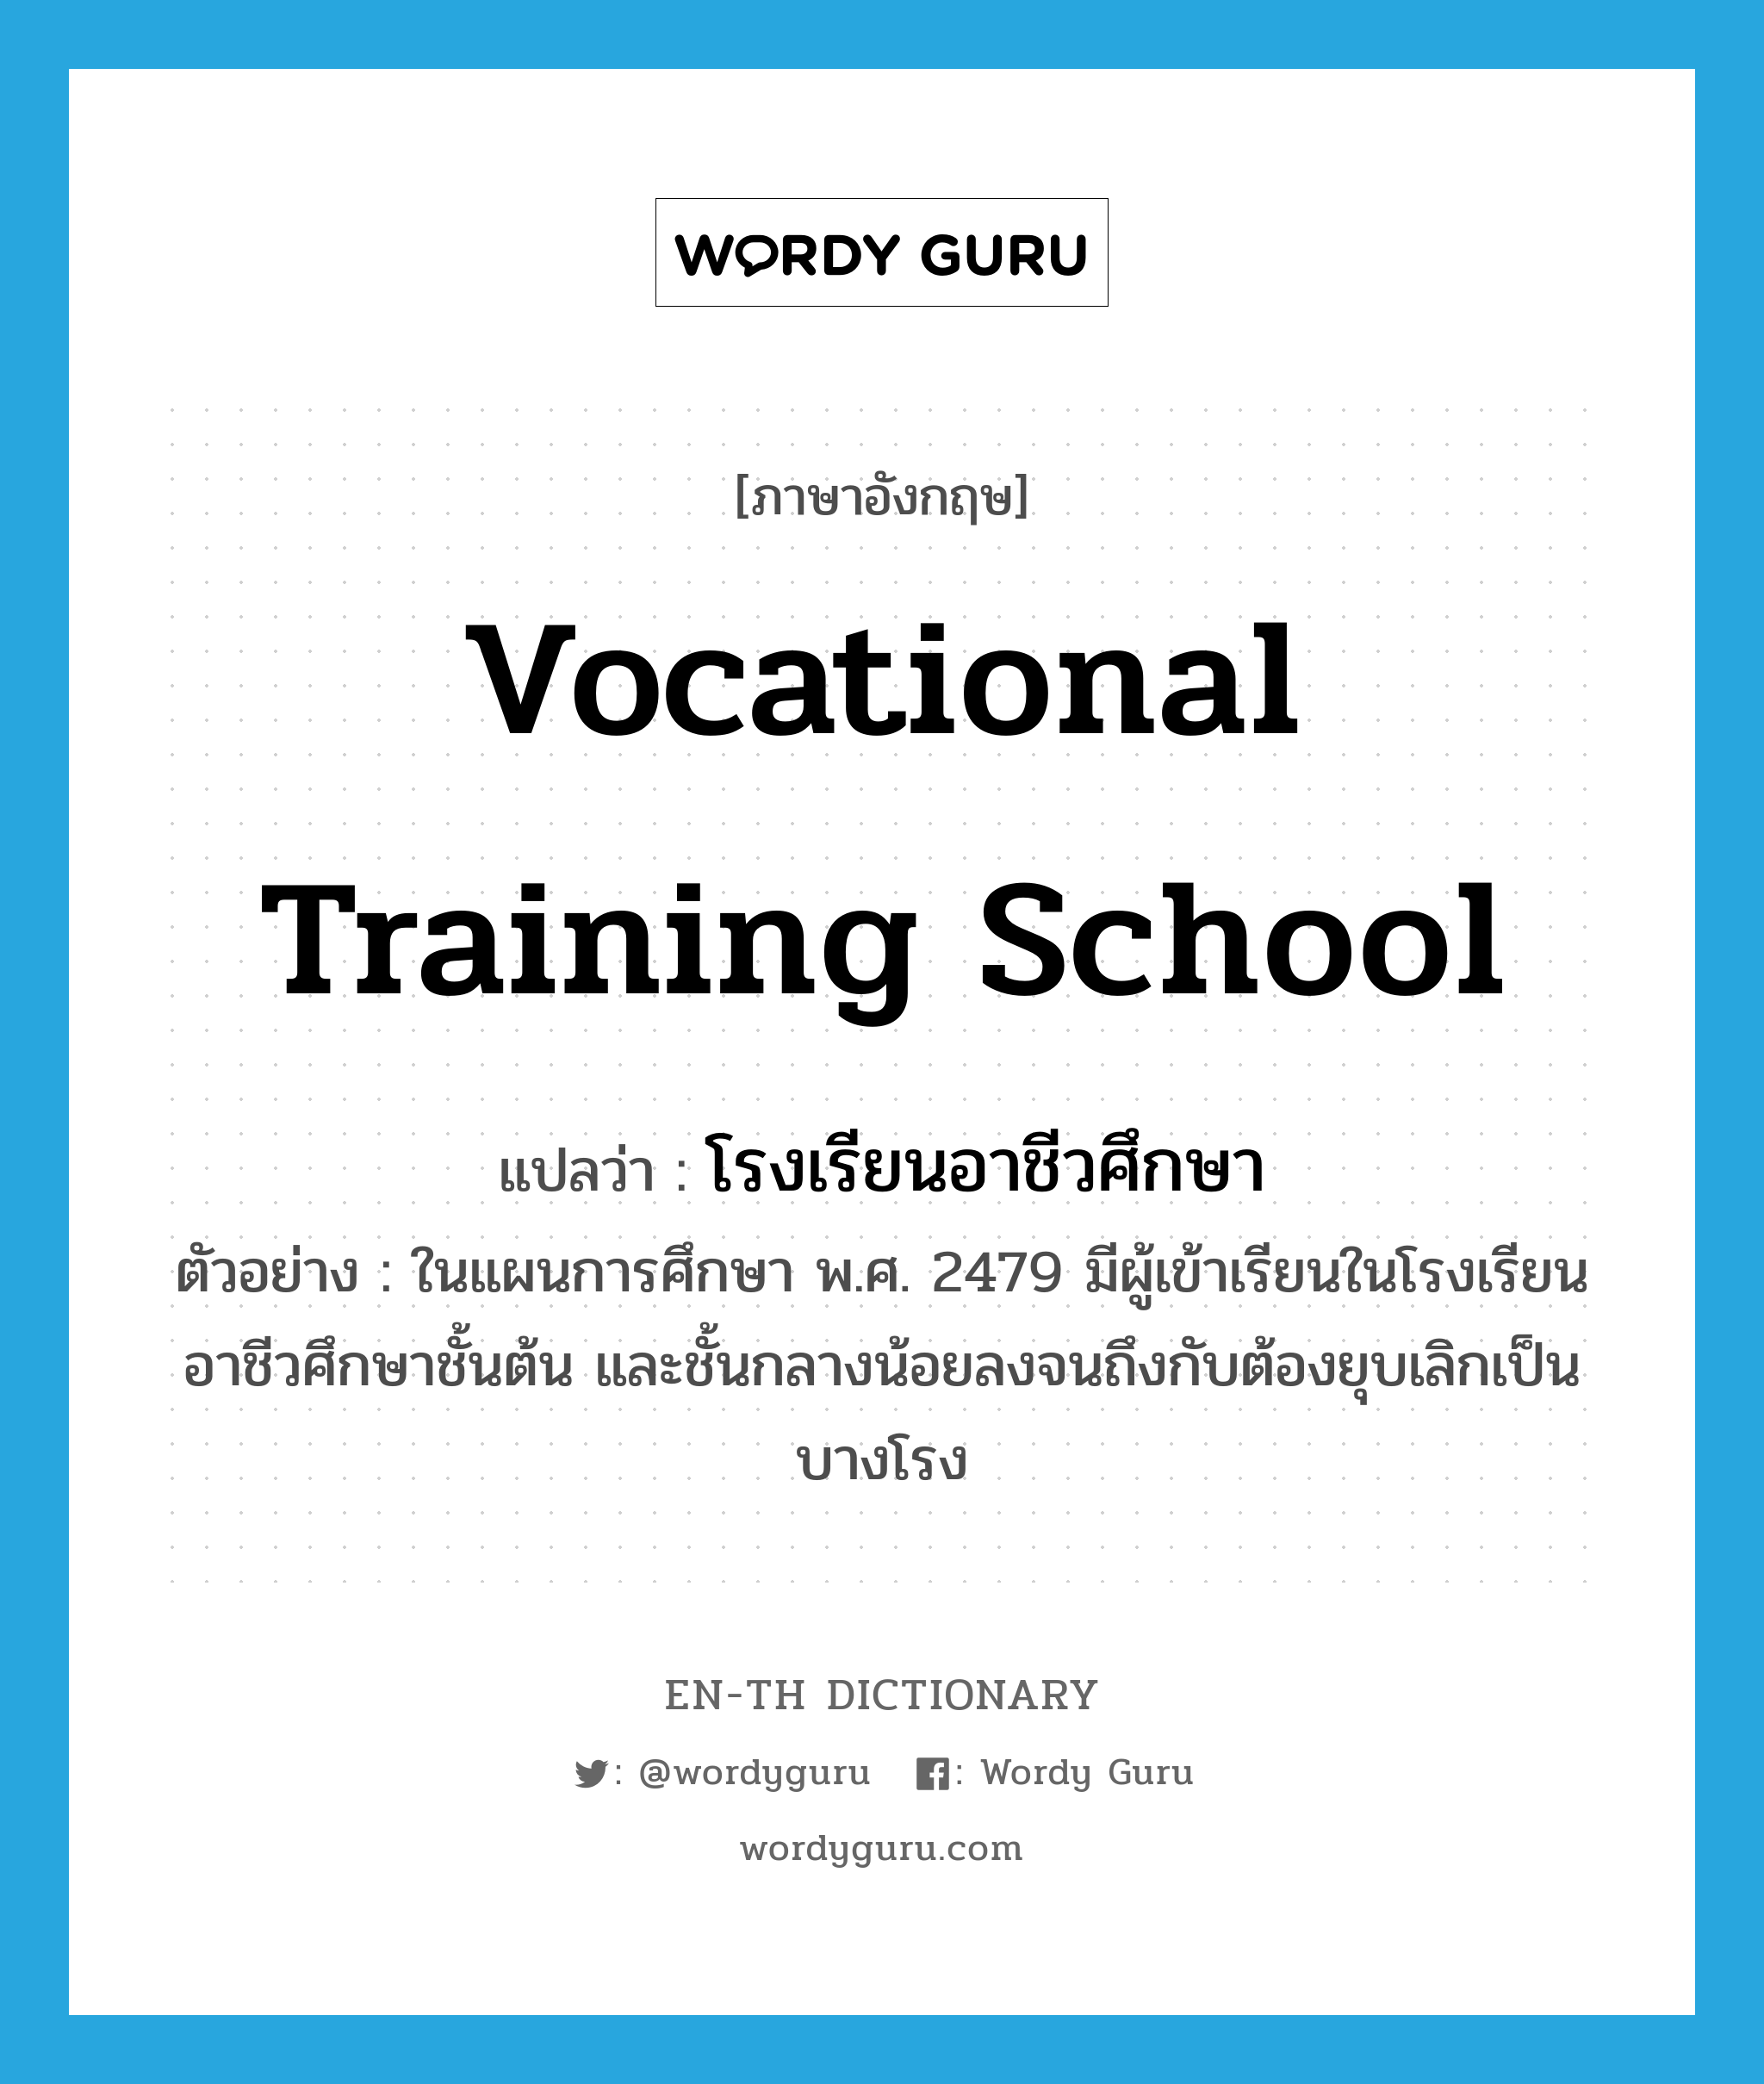 vocational training school แปลว่า?, คำศัพท์ภาษาอังกฤษ vocational training school แปลว่า โรงเรียนอาชีวศึกษา ประเภท N ตัวอย่าง ในแผนการศึกษา พ.ศ. 2479 มีผู้เข้าเรียนในโรงเรียนอาชีวศึกษาชั้นต้น และชั้นกลางน้อยลงจนถึงกับต้องยุบเลิกเป็นบางโรง หมวด N